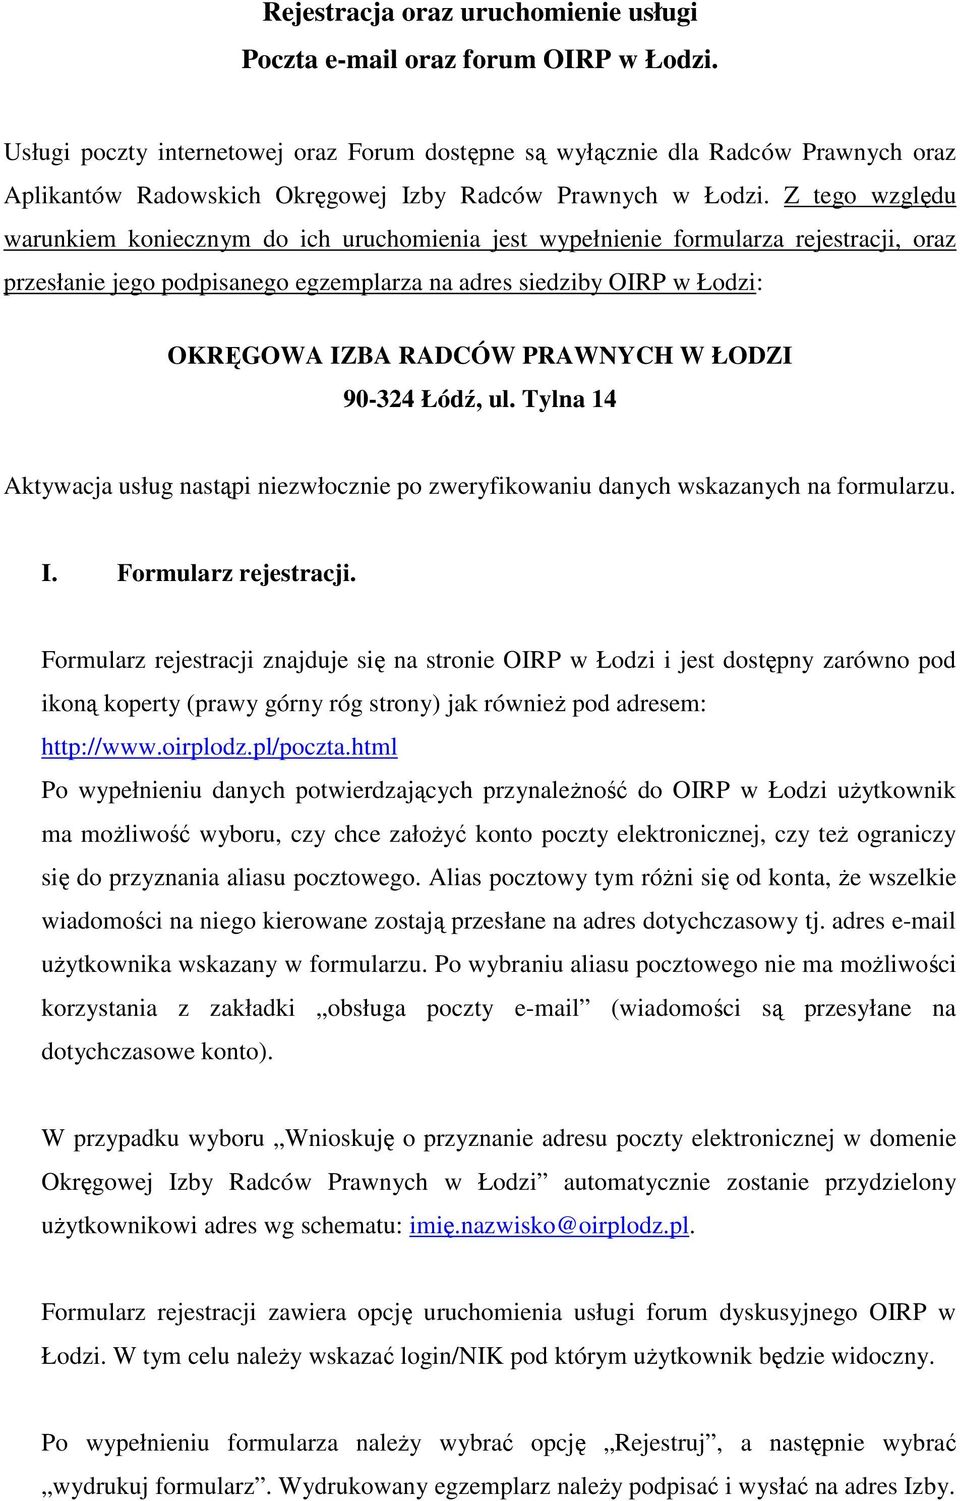 Z tego względu warunkiem koniecznym do ich uruchomienia jest wypełnienie formularza rejestracji, oraz przesłanie jego podpisanego egzemplarza na adres siedziby OIRP w Łodzi: OKRĘGOWA IZBA RADCÓW